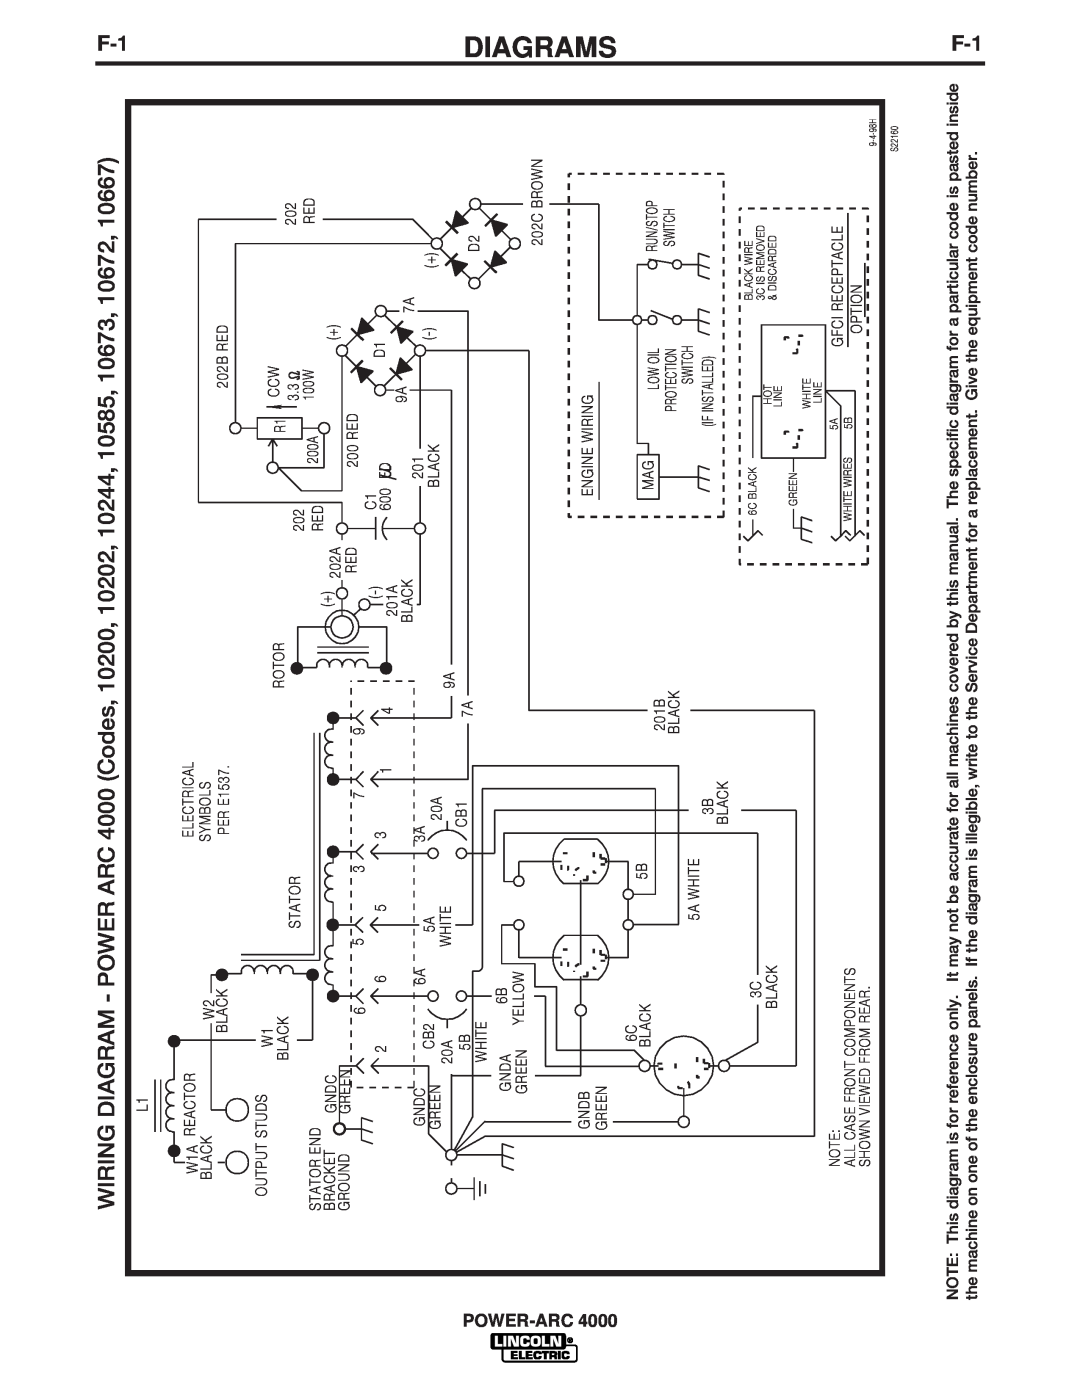 Lincoln Electric 4000 manual Diagrams, Electrical, Symbols, PER E1537, 200A, 100W 